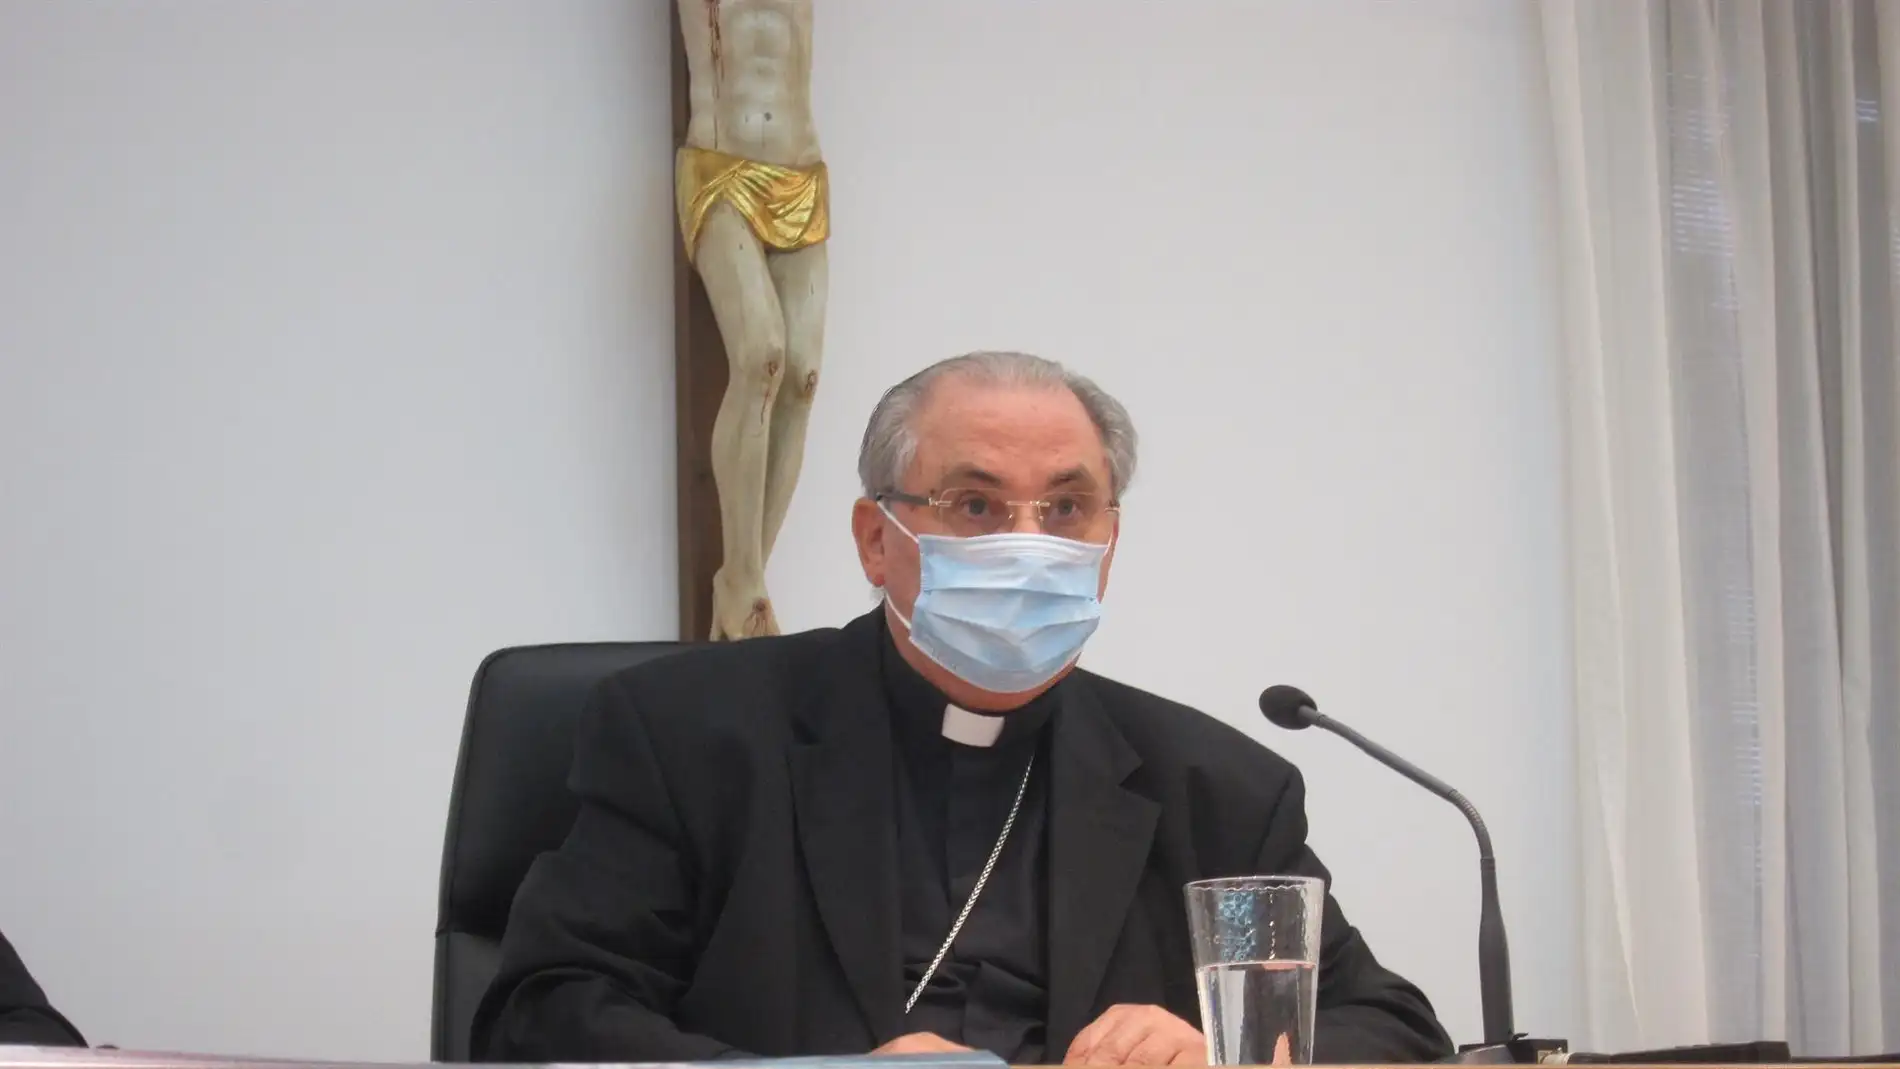 El arzobispo de Mérida-Badajoz ve una "imprudencia" la grabación de vídeo de C.Tangana y Peluso en la Catedral de Toledo